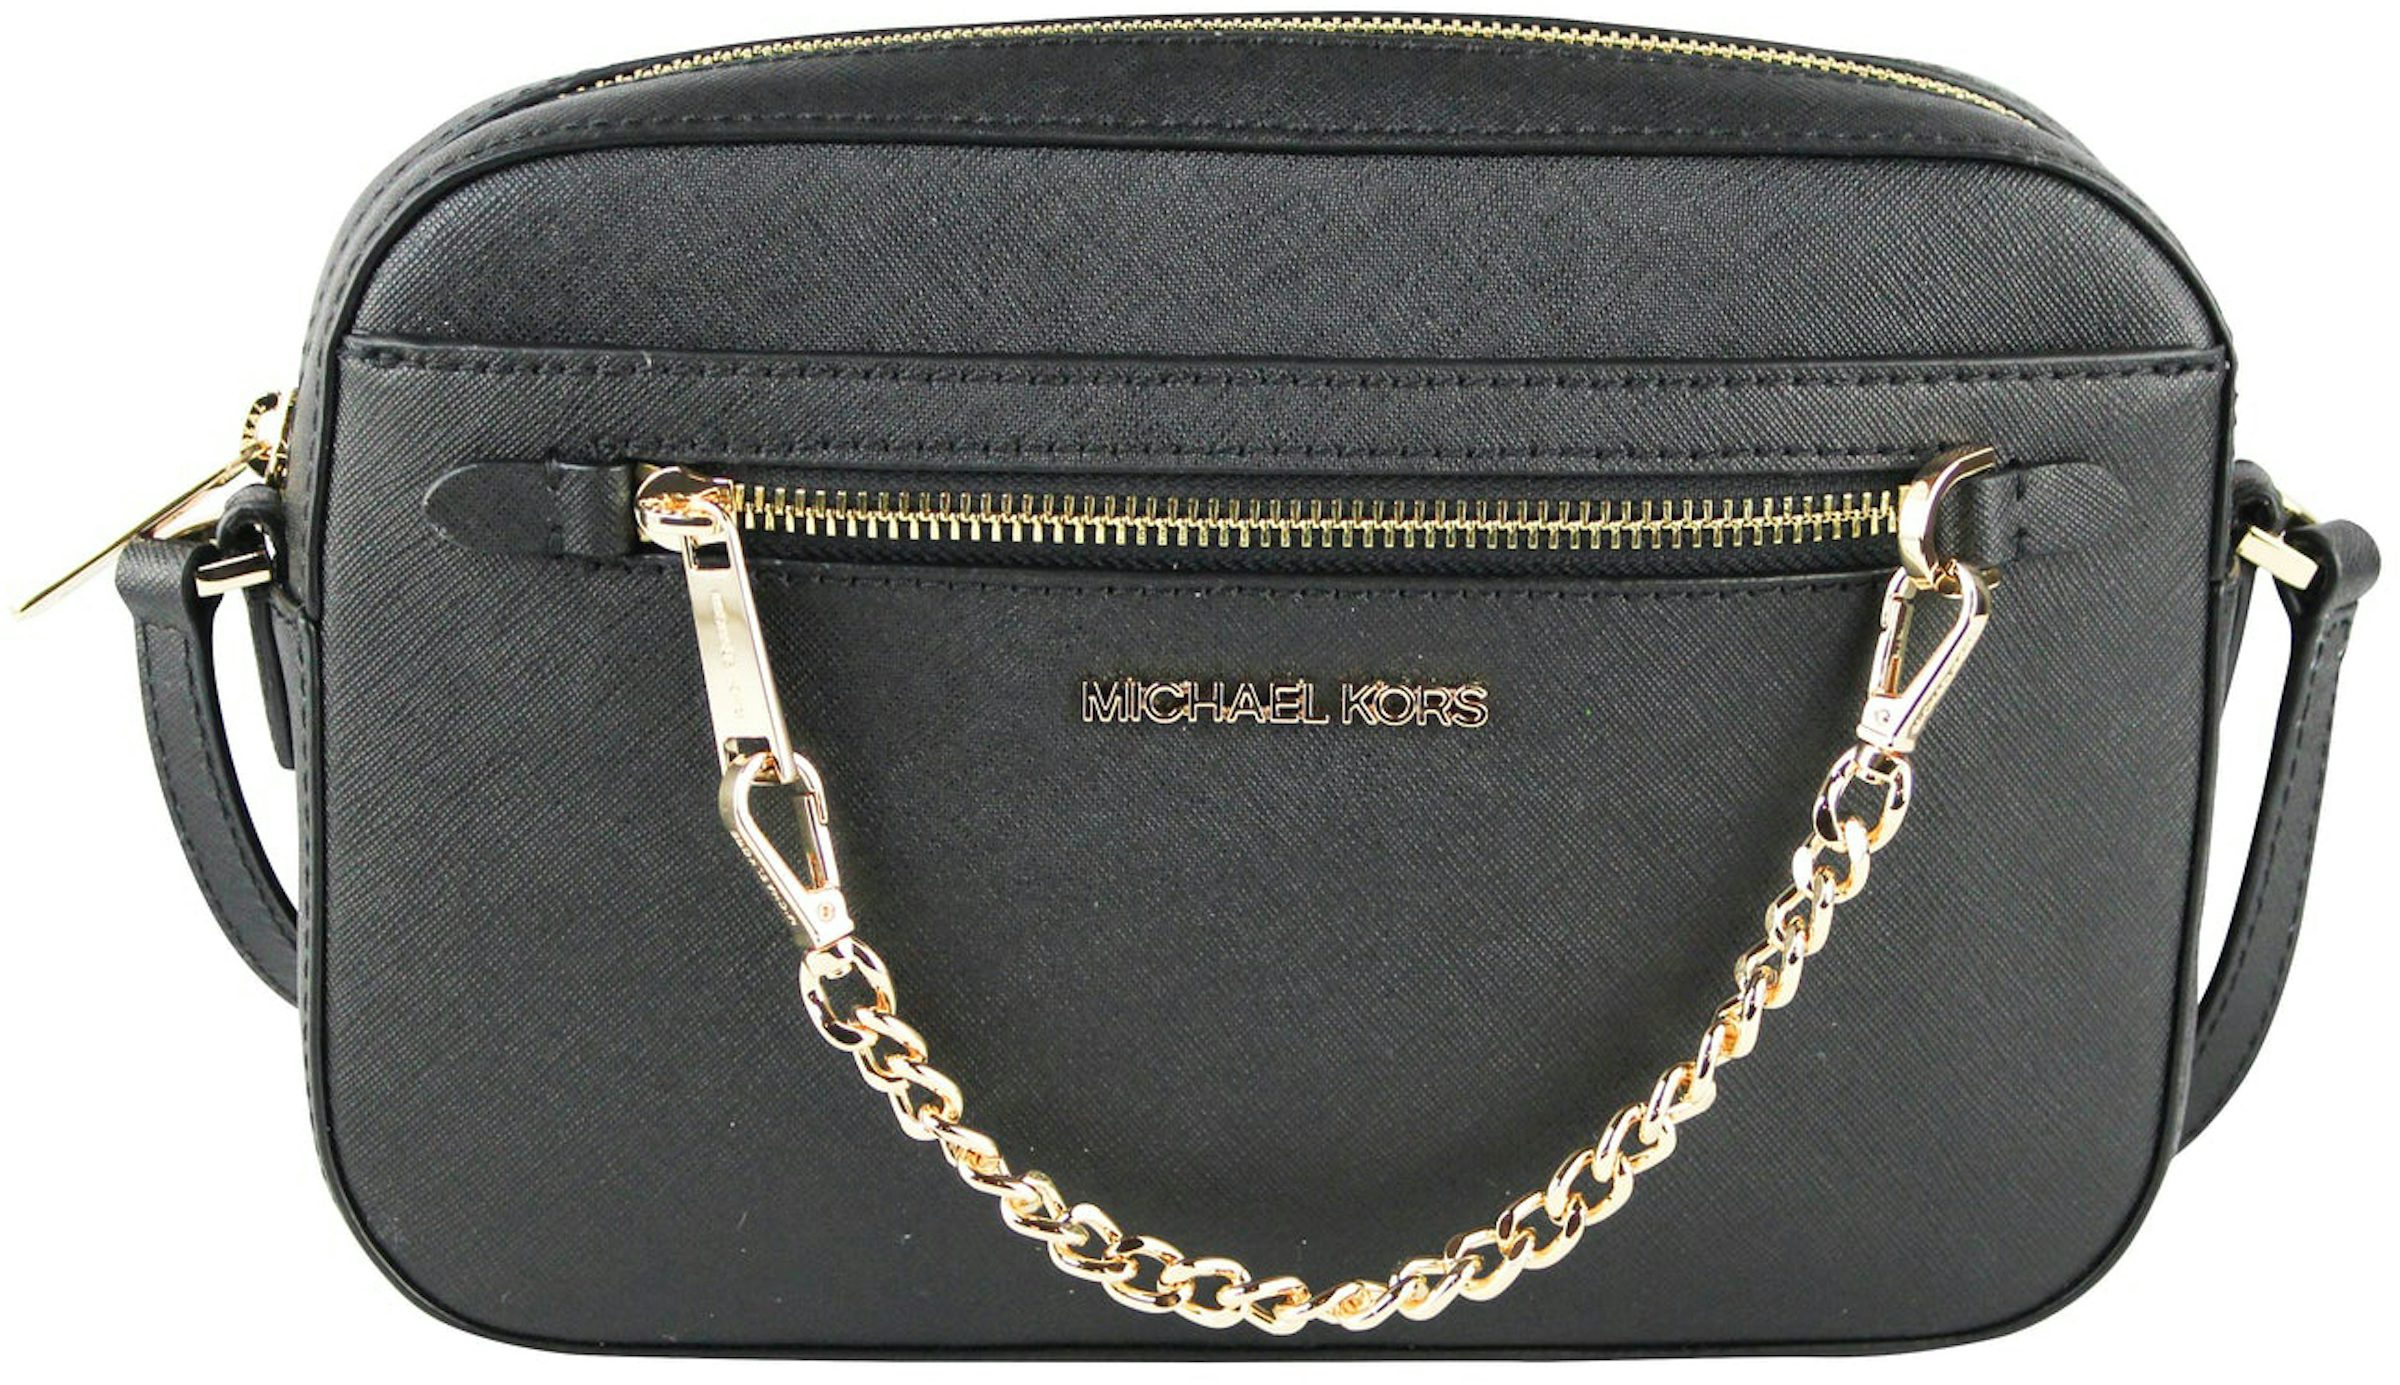 Michael Kors Jet Set Large Zip Chain Crossbody Bag Shoulder Black Leather Gold